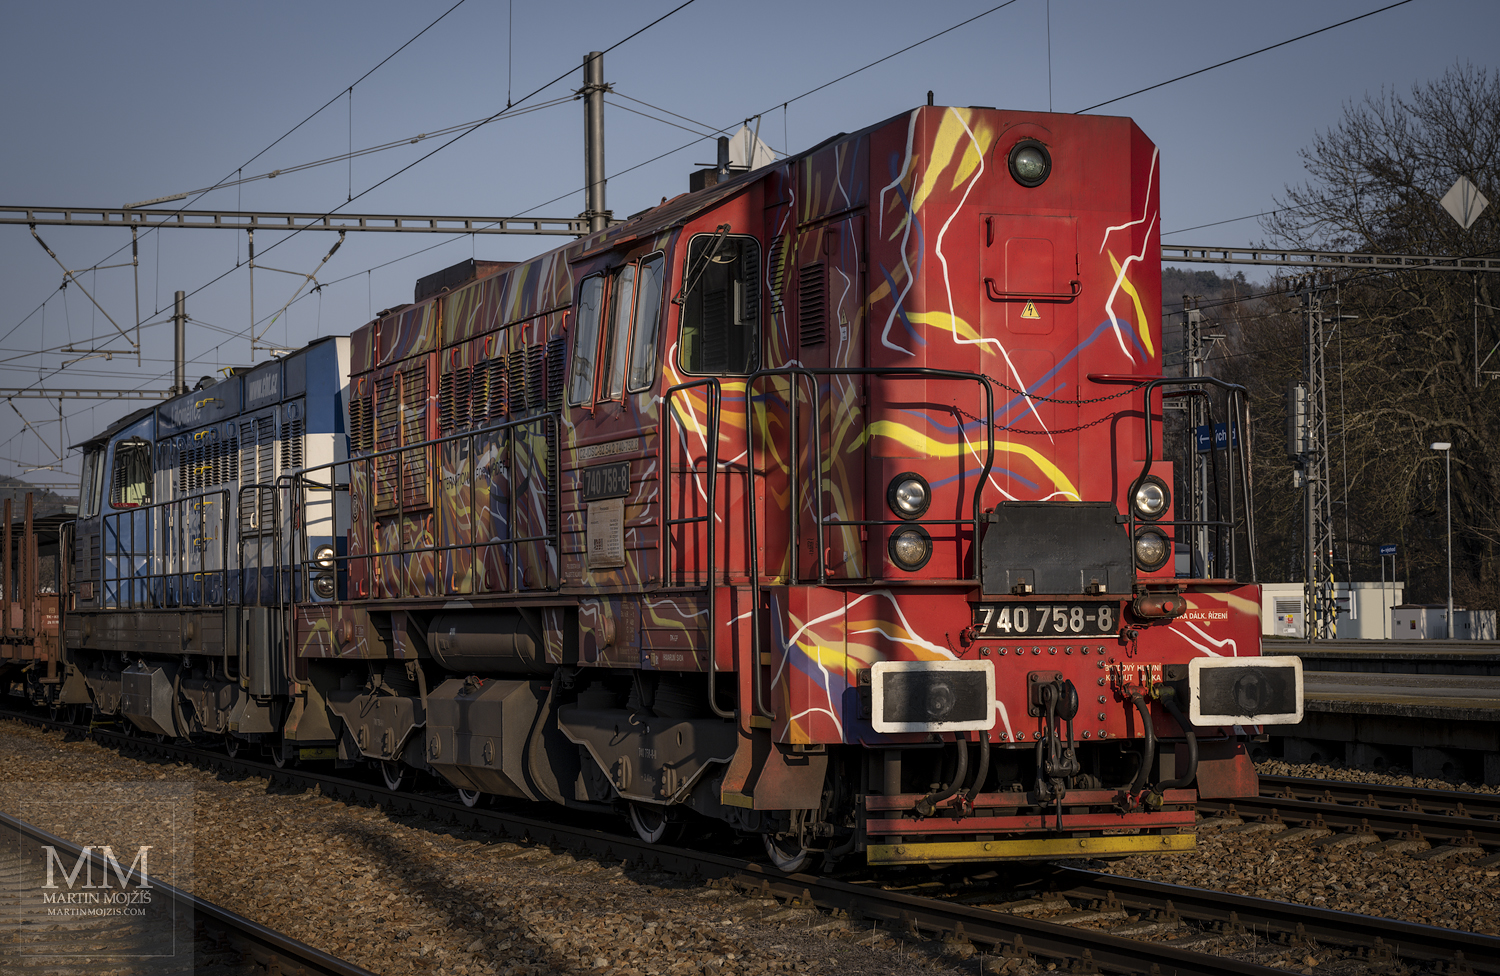 Dvojice diesel-elektrických lokomotiv zvaných Kocour, v čele 740 758-8 IDS Cargo se zakázkovou malbou Interfracht.